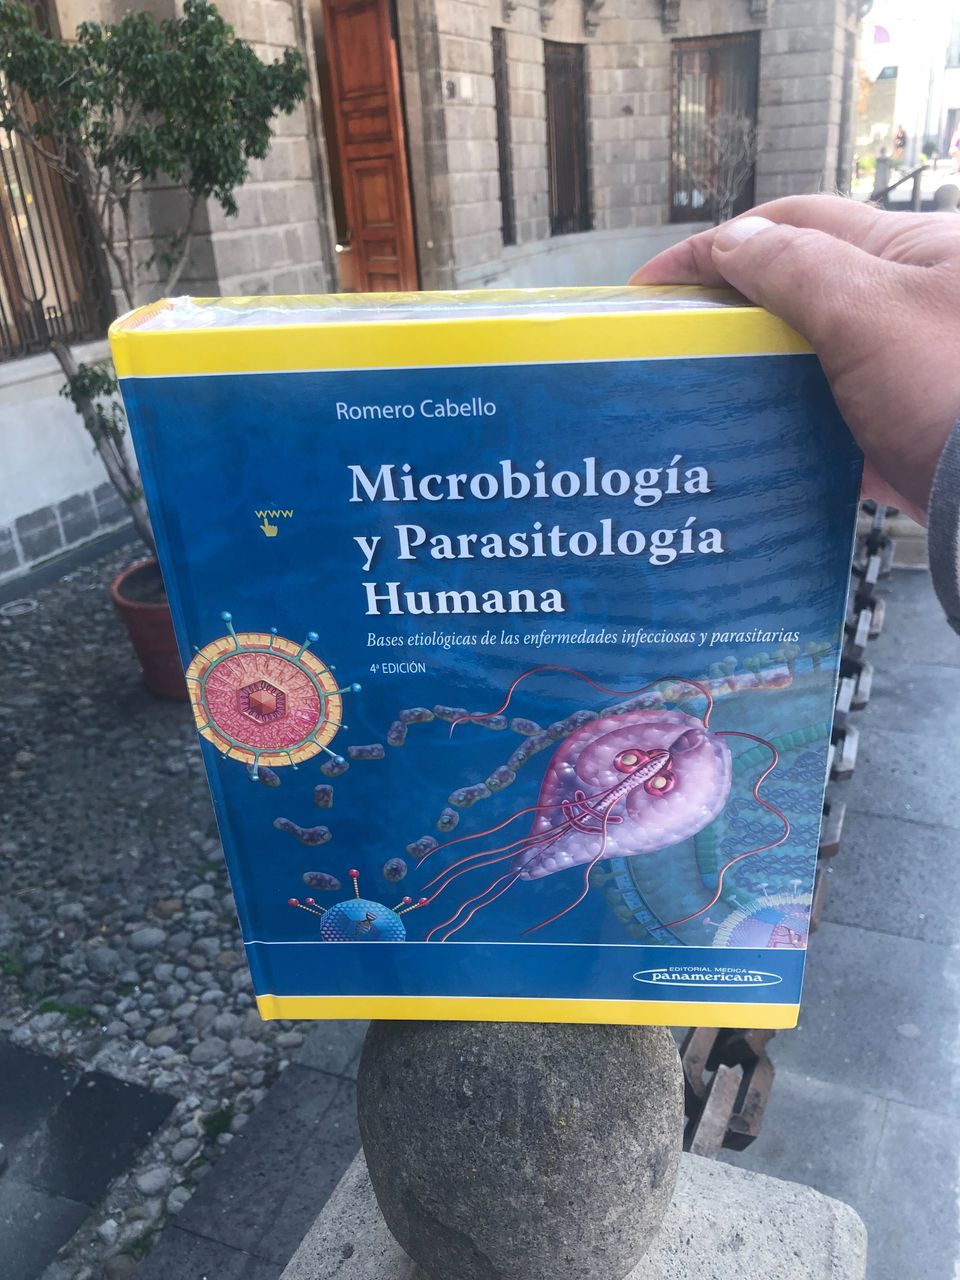 Microbiología y Parasitología Humana